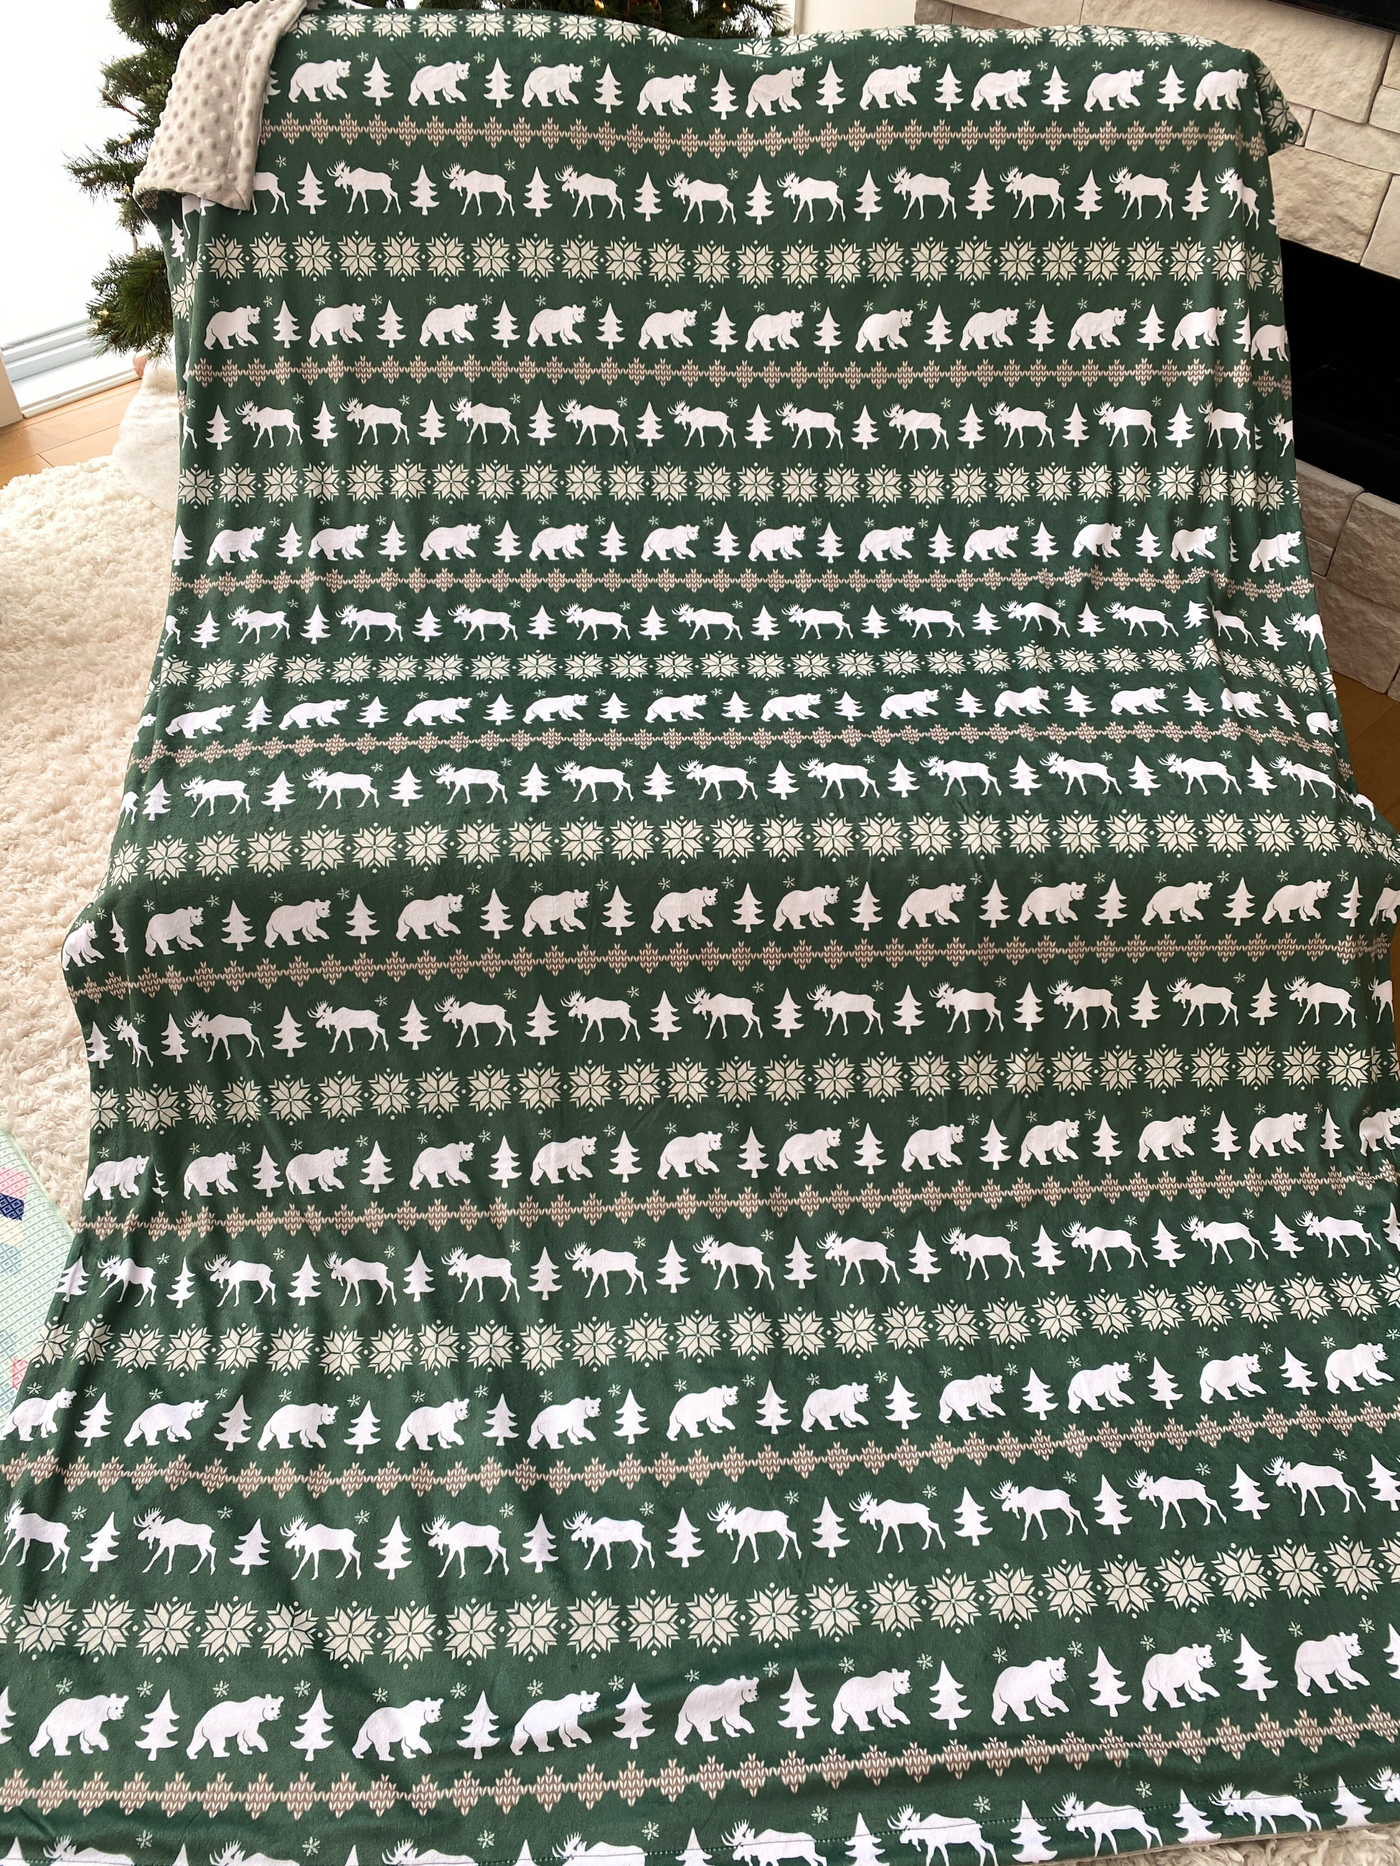 Giant Blanket: Comforting Scandinavian Forest Green